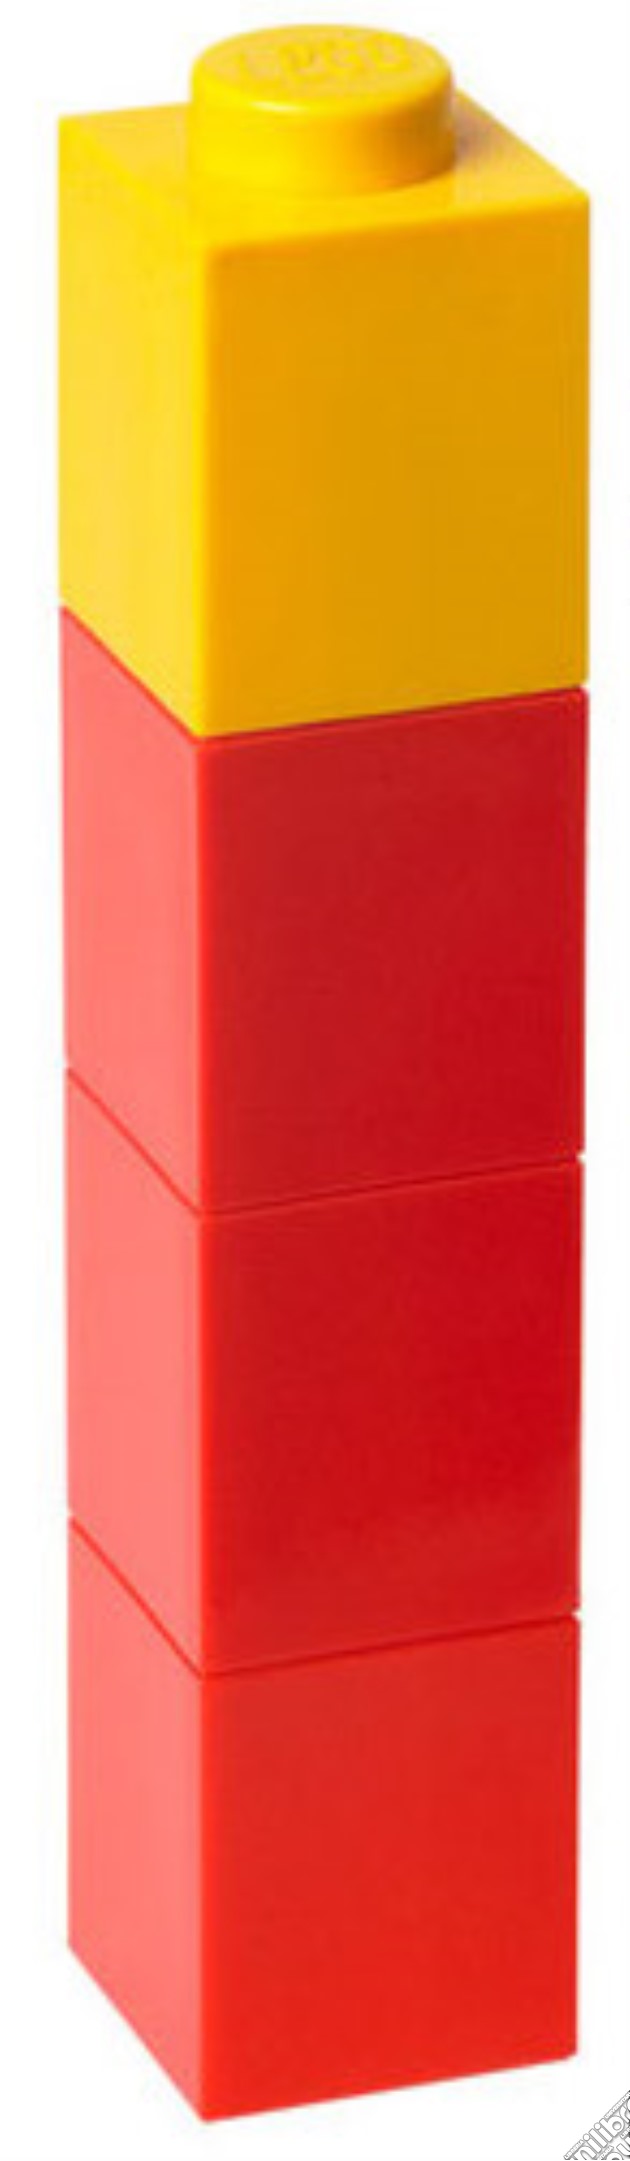 Bottiglia LEGO Rosso/Giallo gioco di GAF